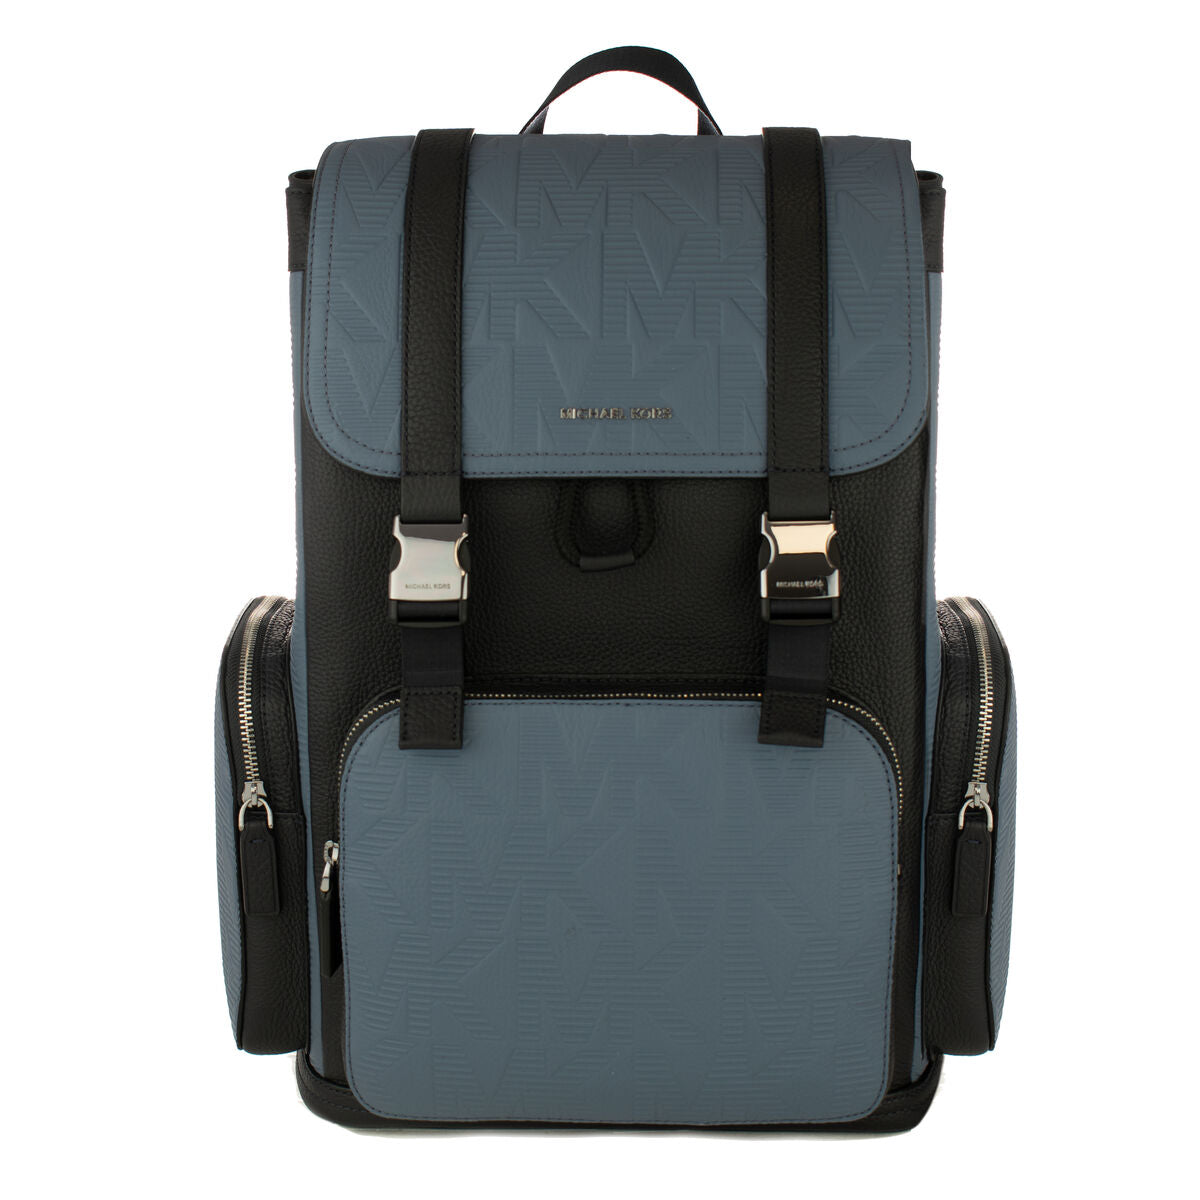 Michael Kors Backpack 37s0mknb2c Blue Black Nylon Plaid Daypack Men